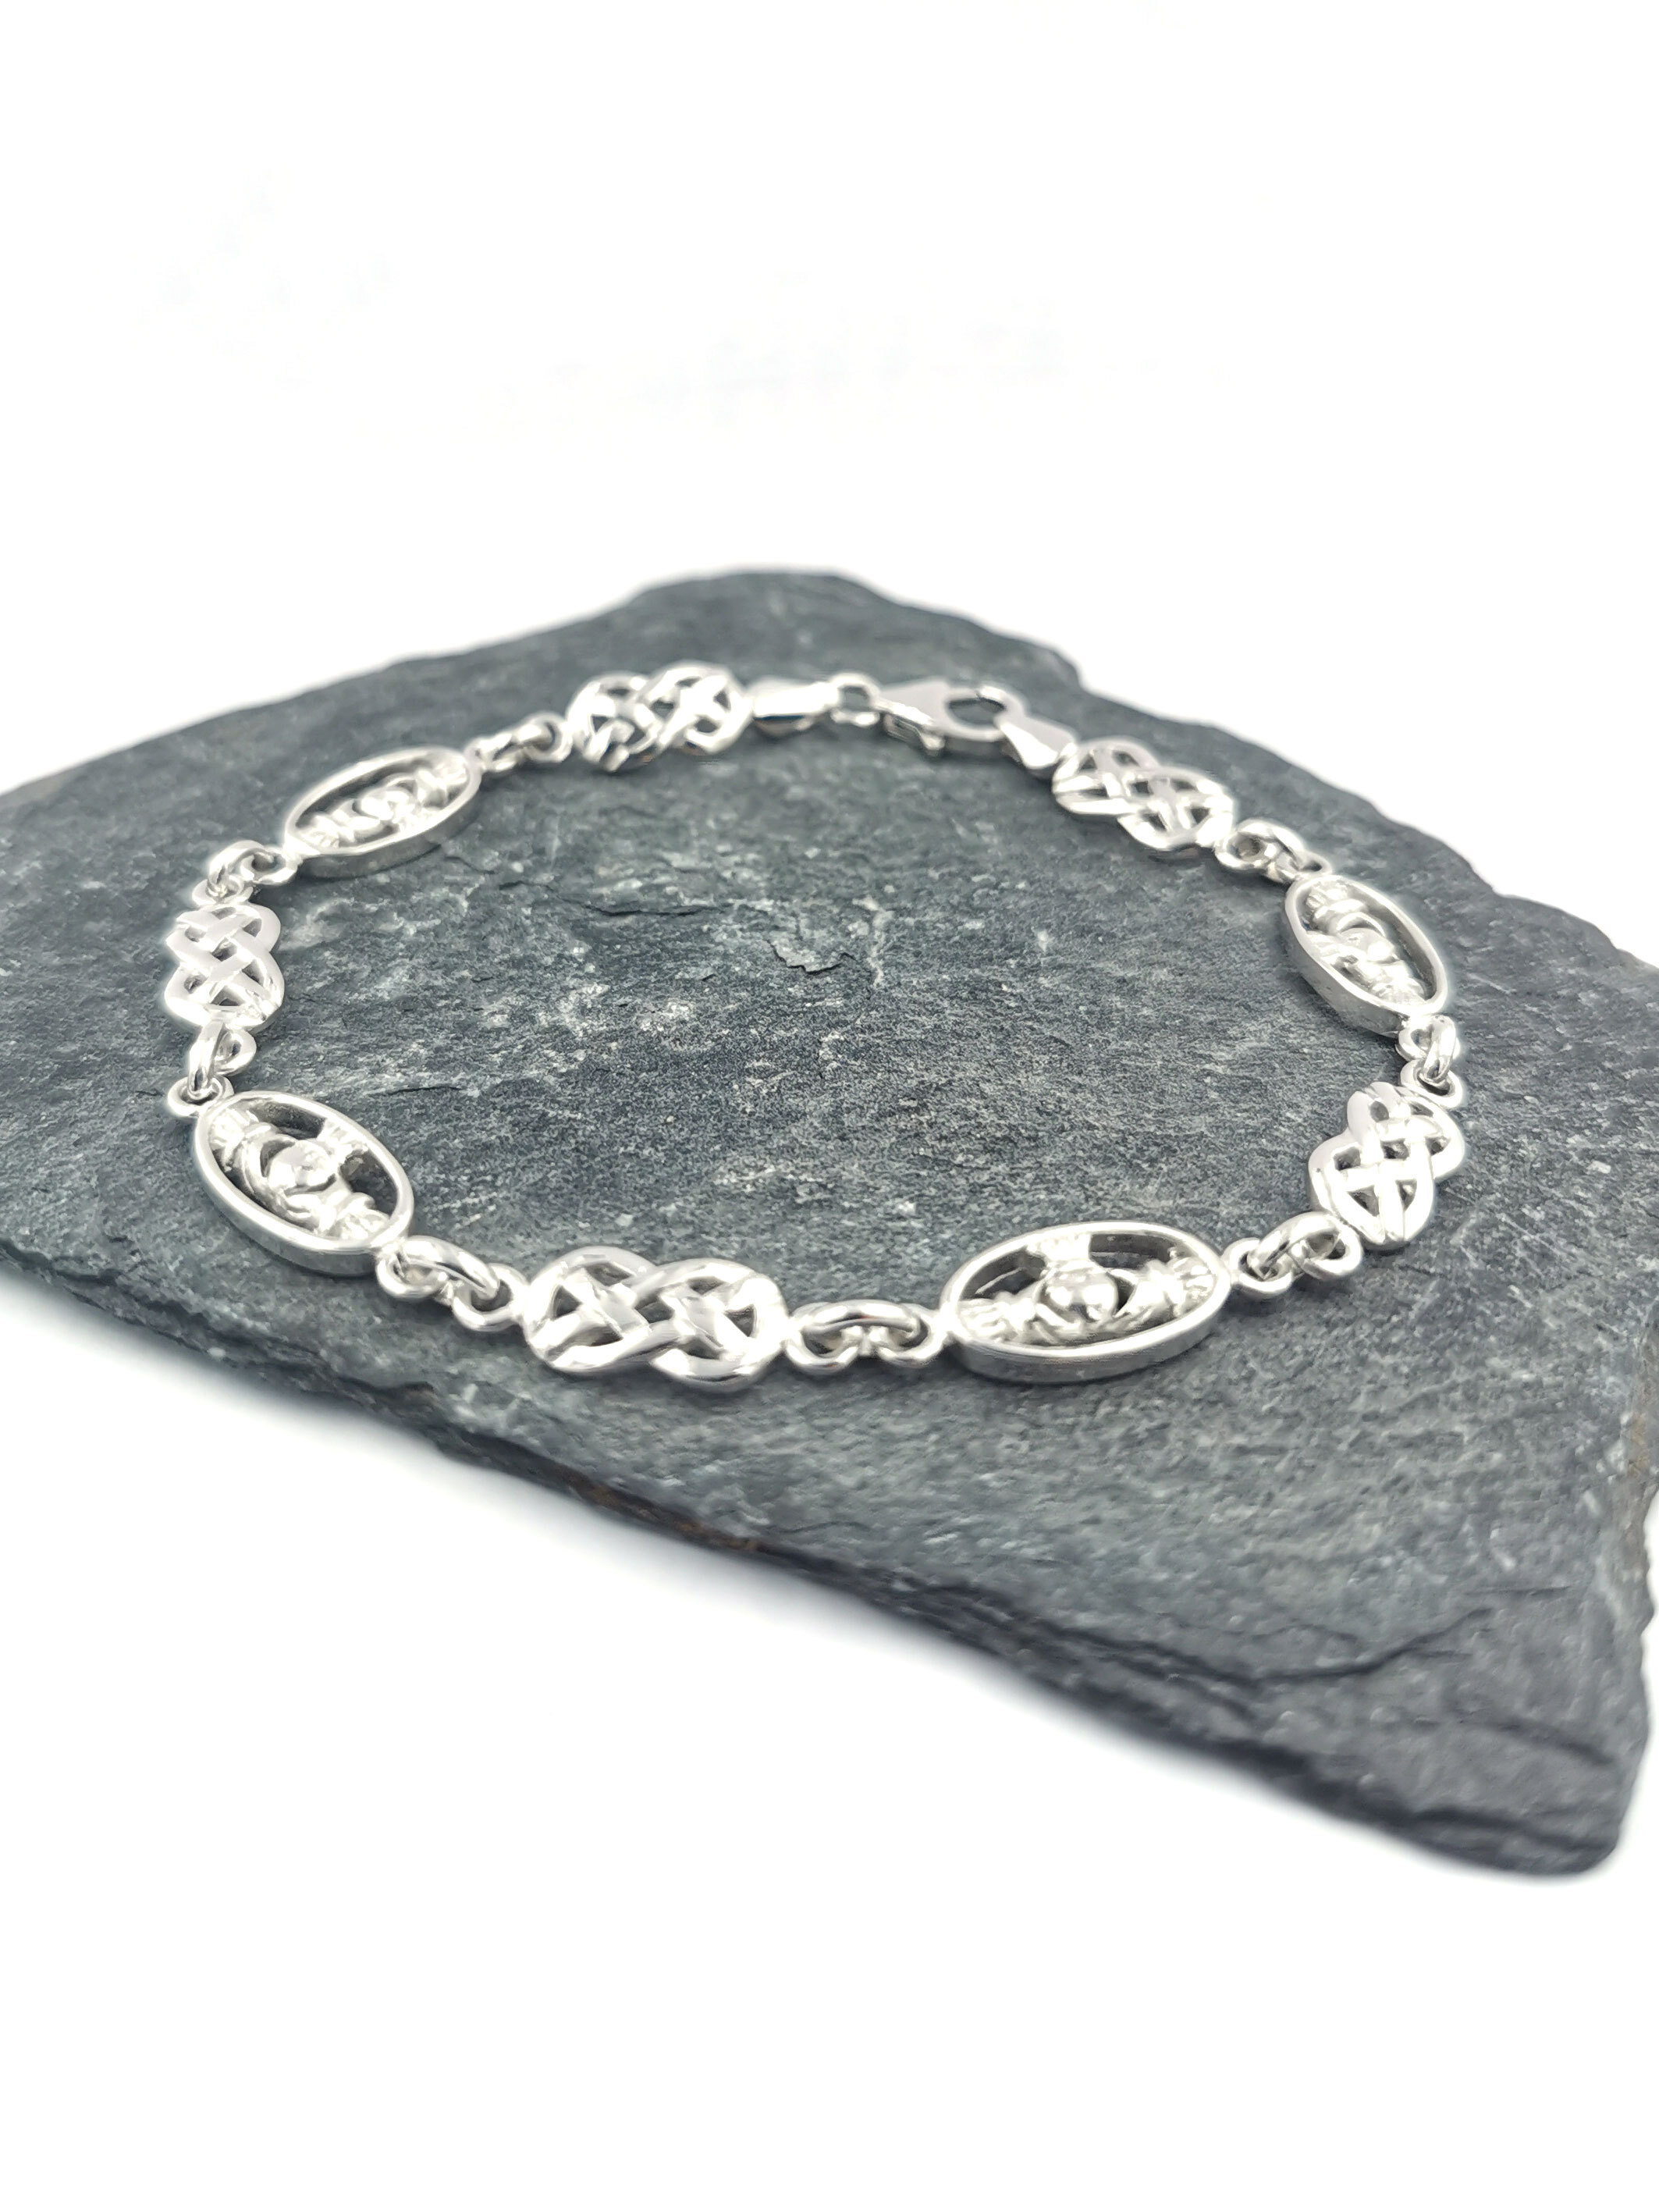 Celtic Dog Bracelet. Sterling silver - Ruyan